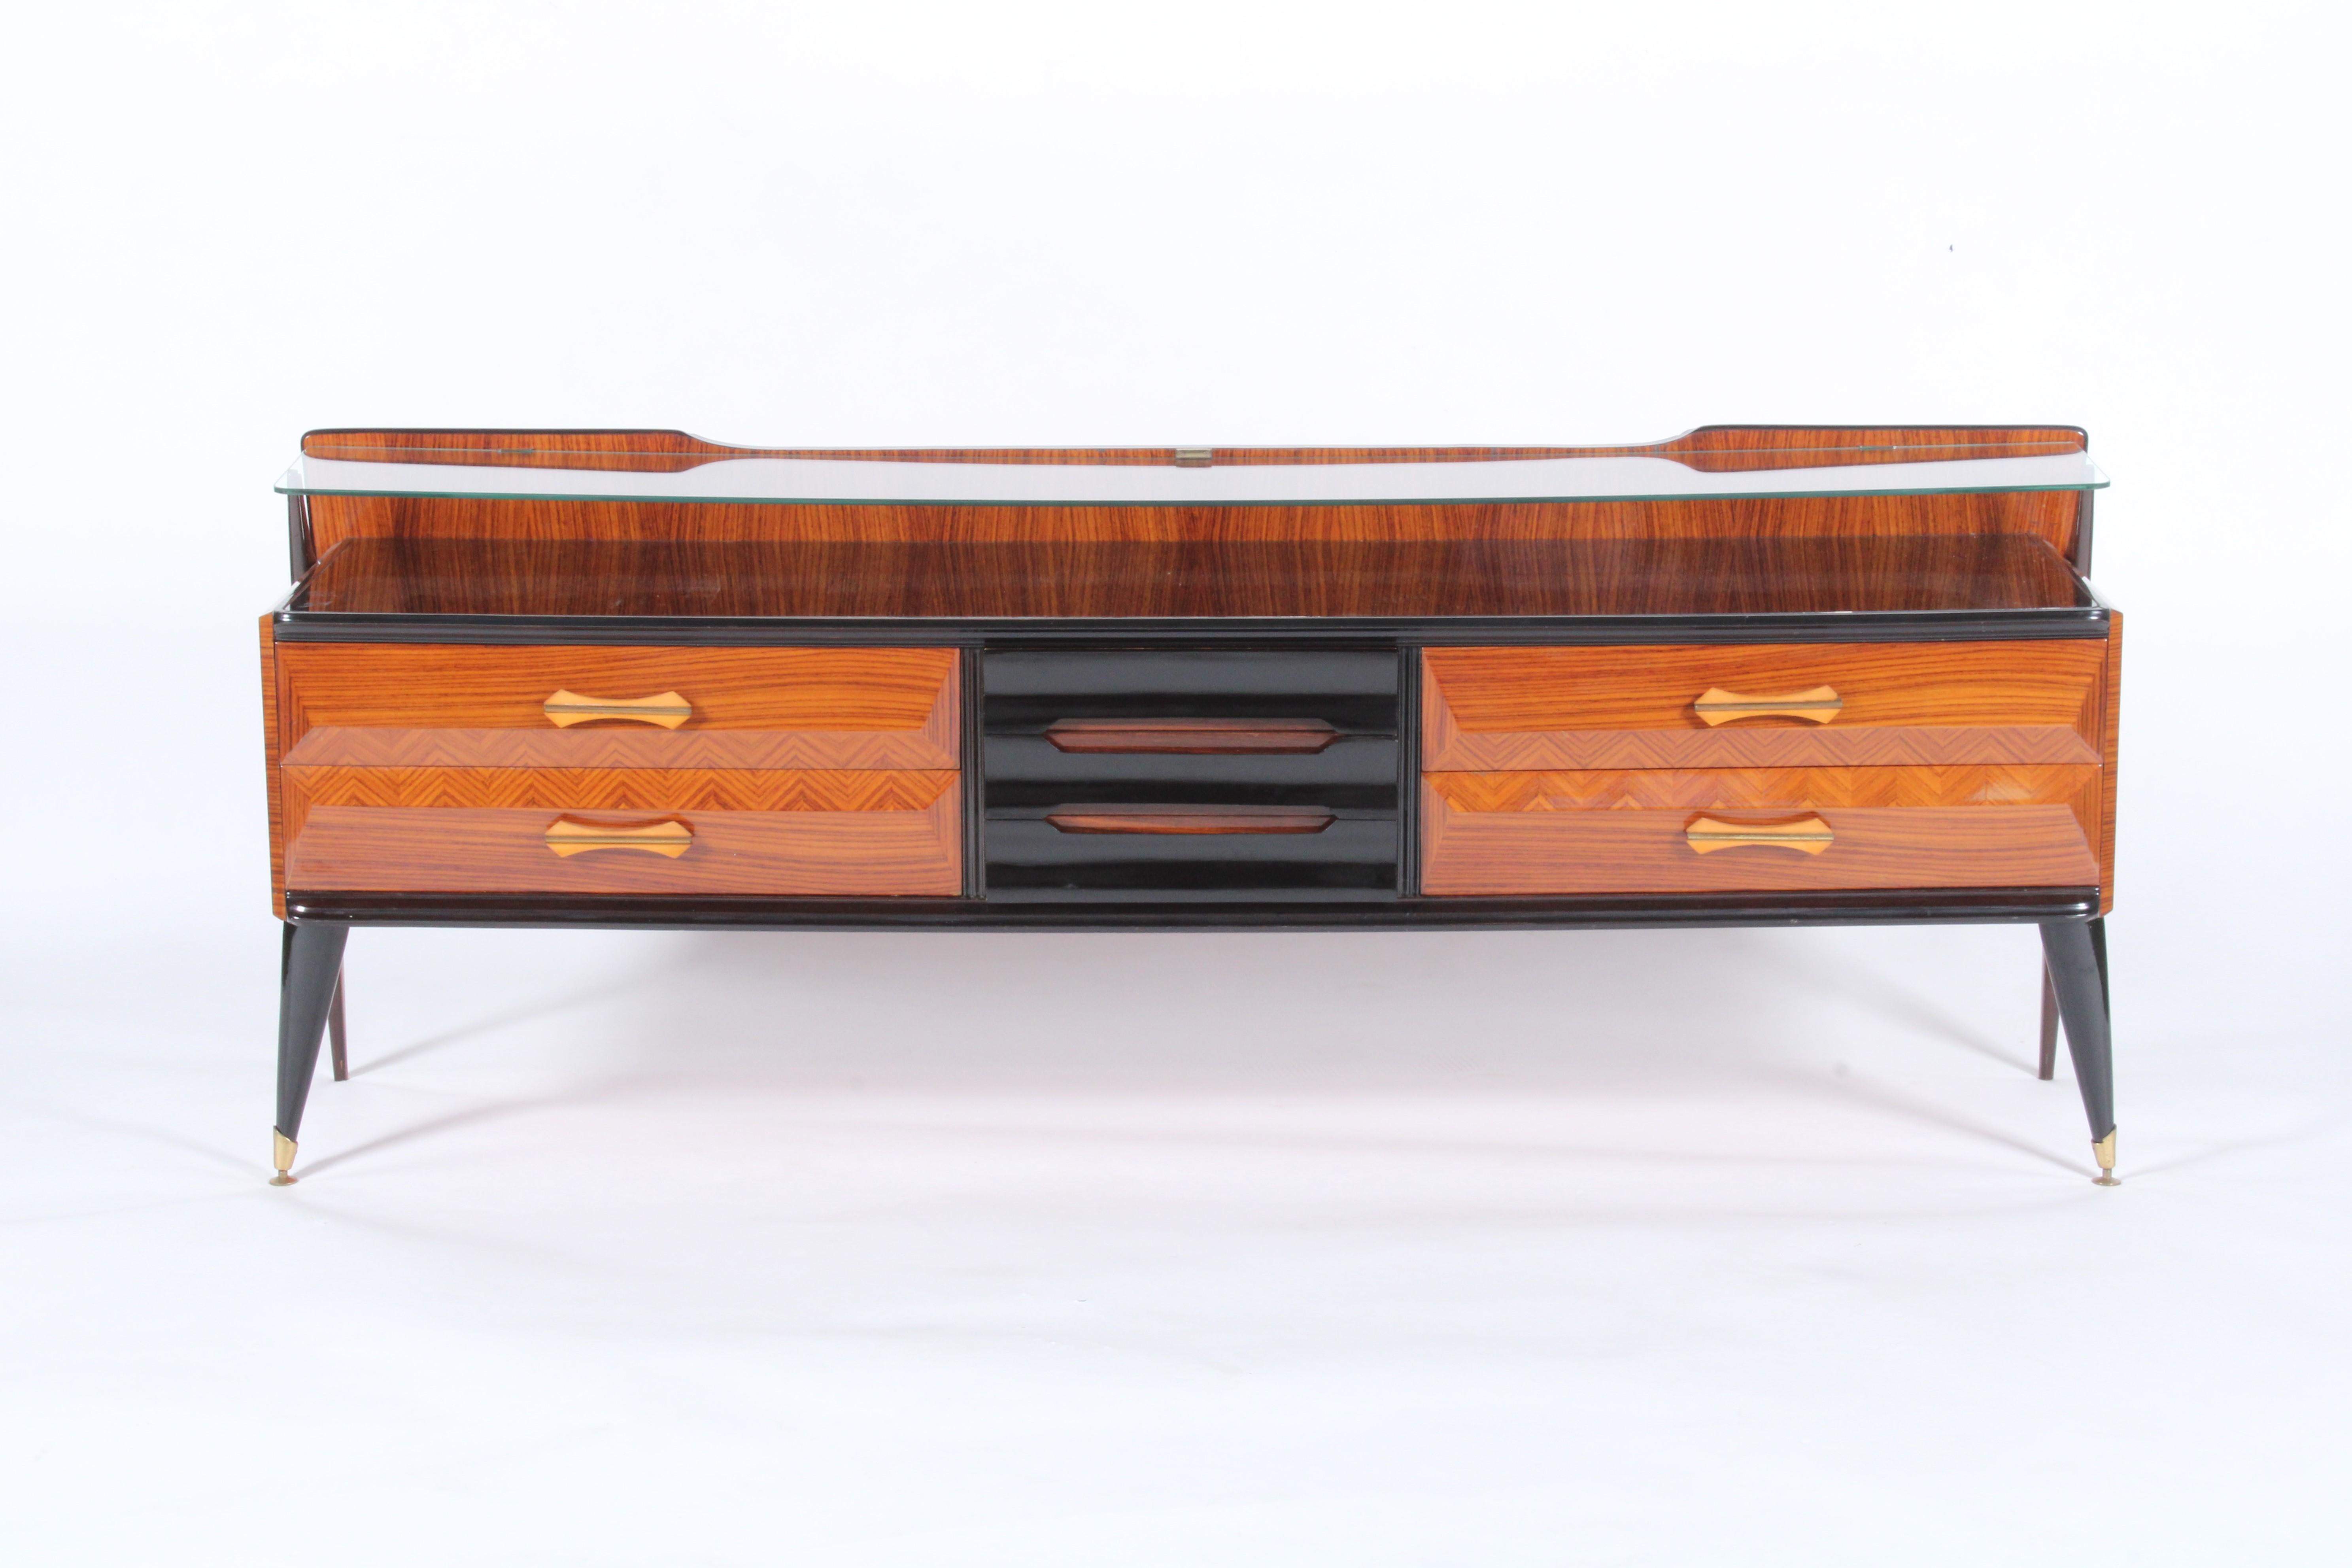 Ein elegantes und stilvolles klassisches italienisches Sideboard aus der Mitte des Jahrhunderts mit Schubladenfronten im Chevron-Muster und sich verjüngenden ebonisierten Beinen und Details. Dieses atemberaubende Stück stammt direkt aus einer